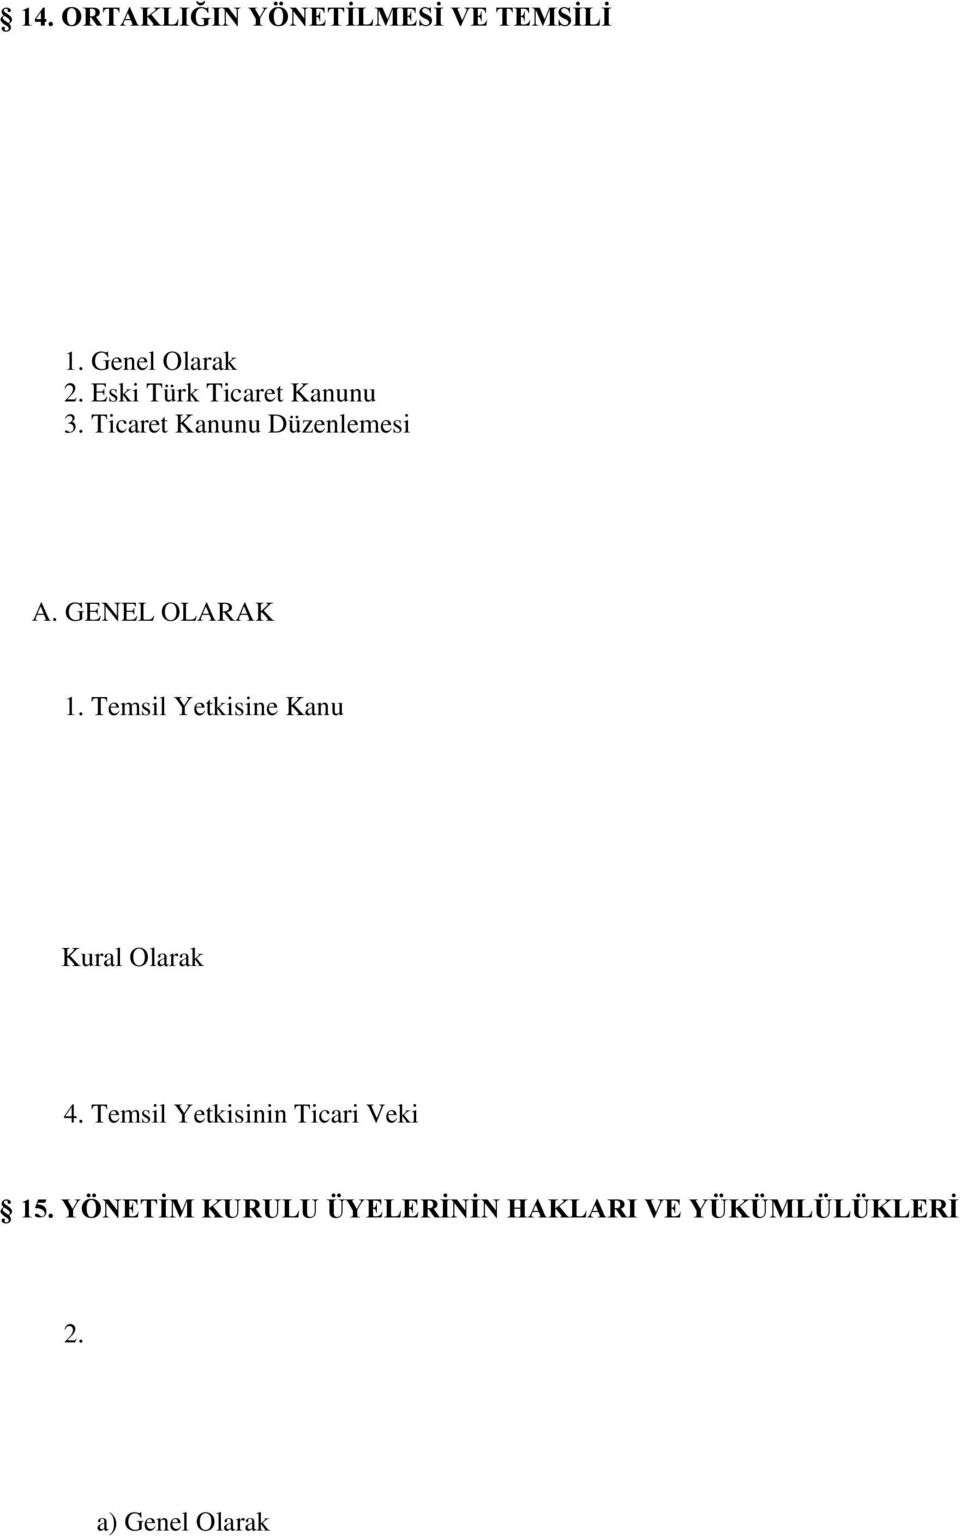 Görüşmelere Katılma ve Oy Kullanma Yasağı B. YÖNETİM KURULU KARARLARININ GEÇERLİLİĞİ 1. Genel Olarak 2. Eski Türk Ticaret Kanunu 3.